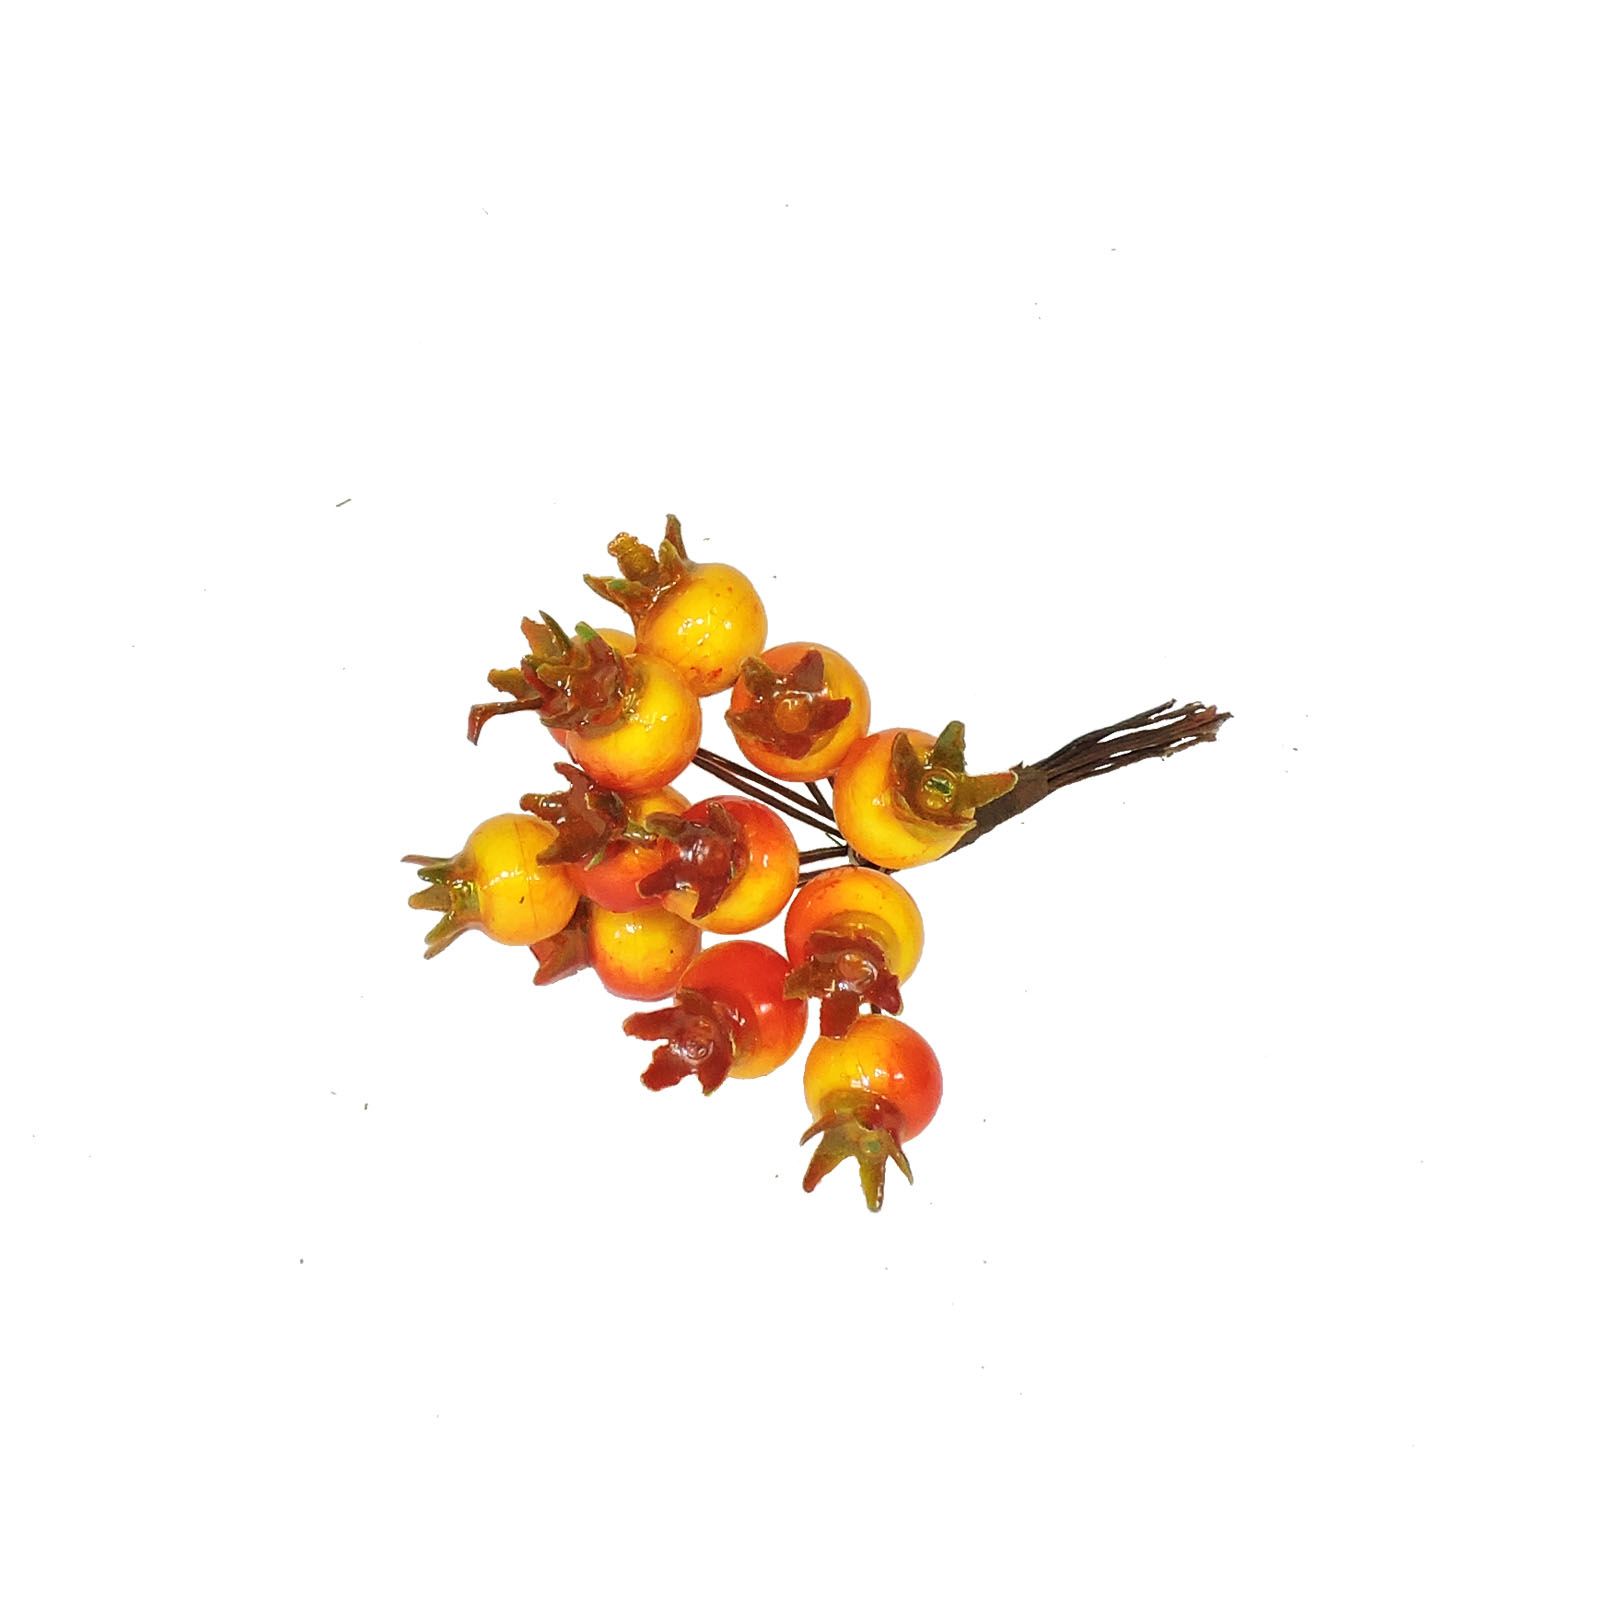 Šípky - dekorace podzim